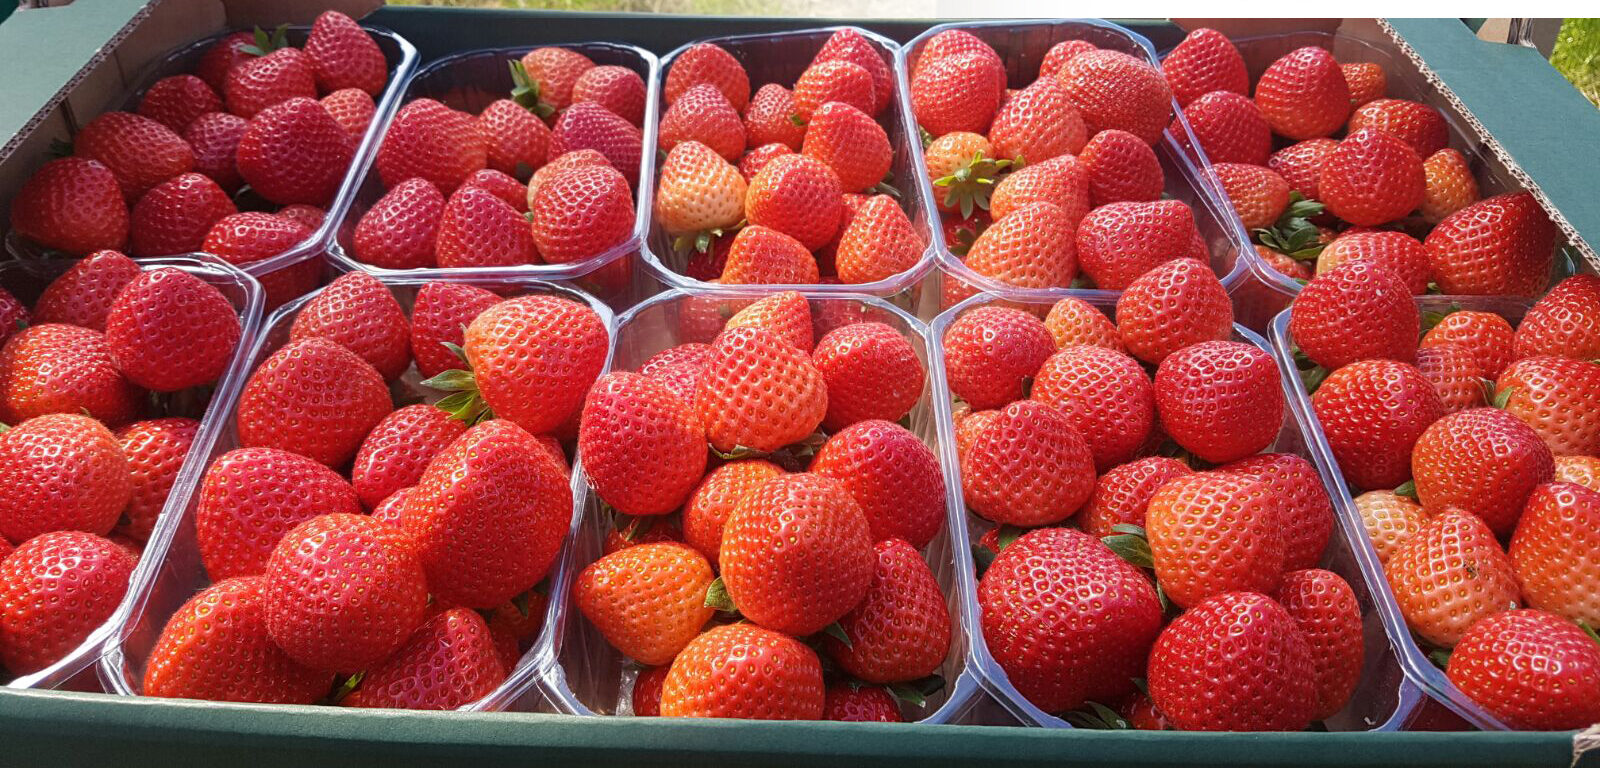 Strawberry frukt - bästa pris